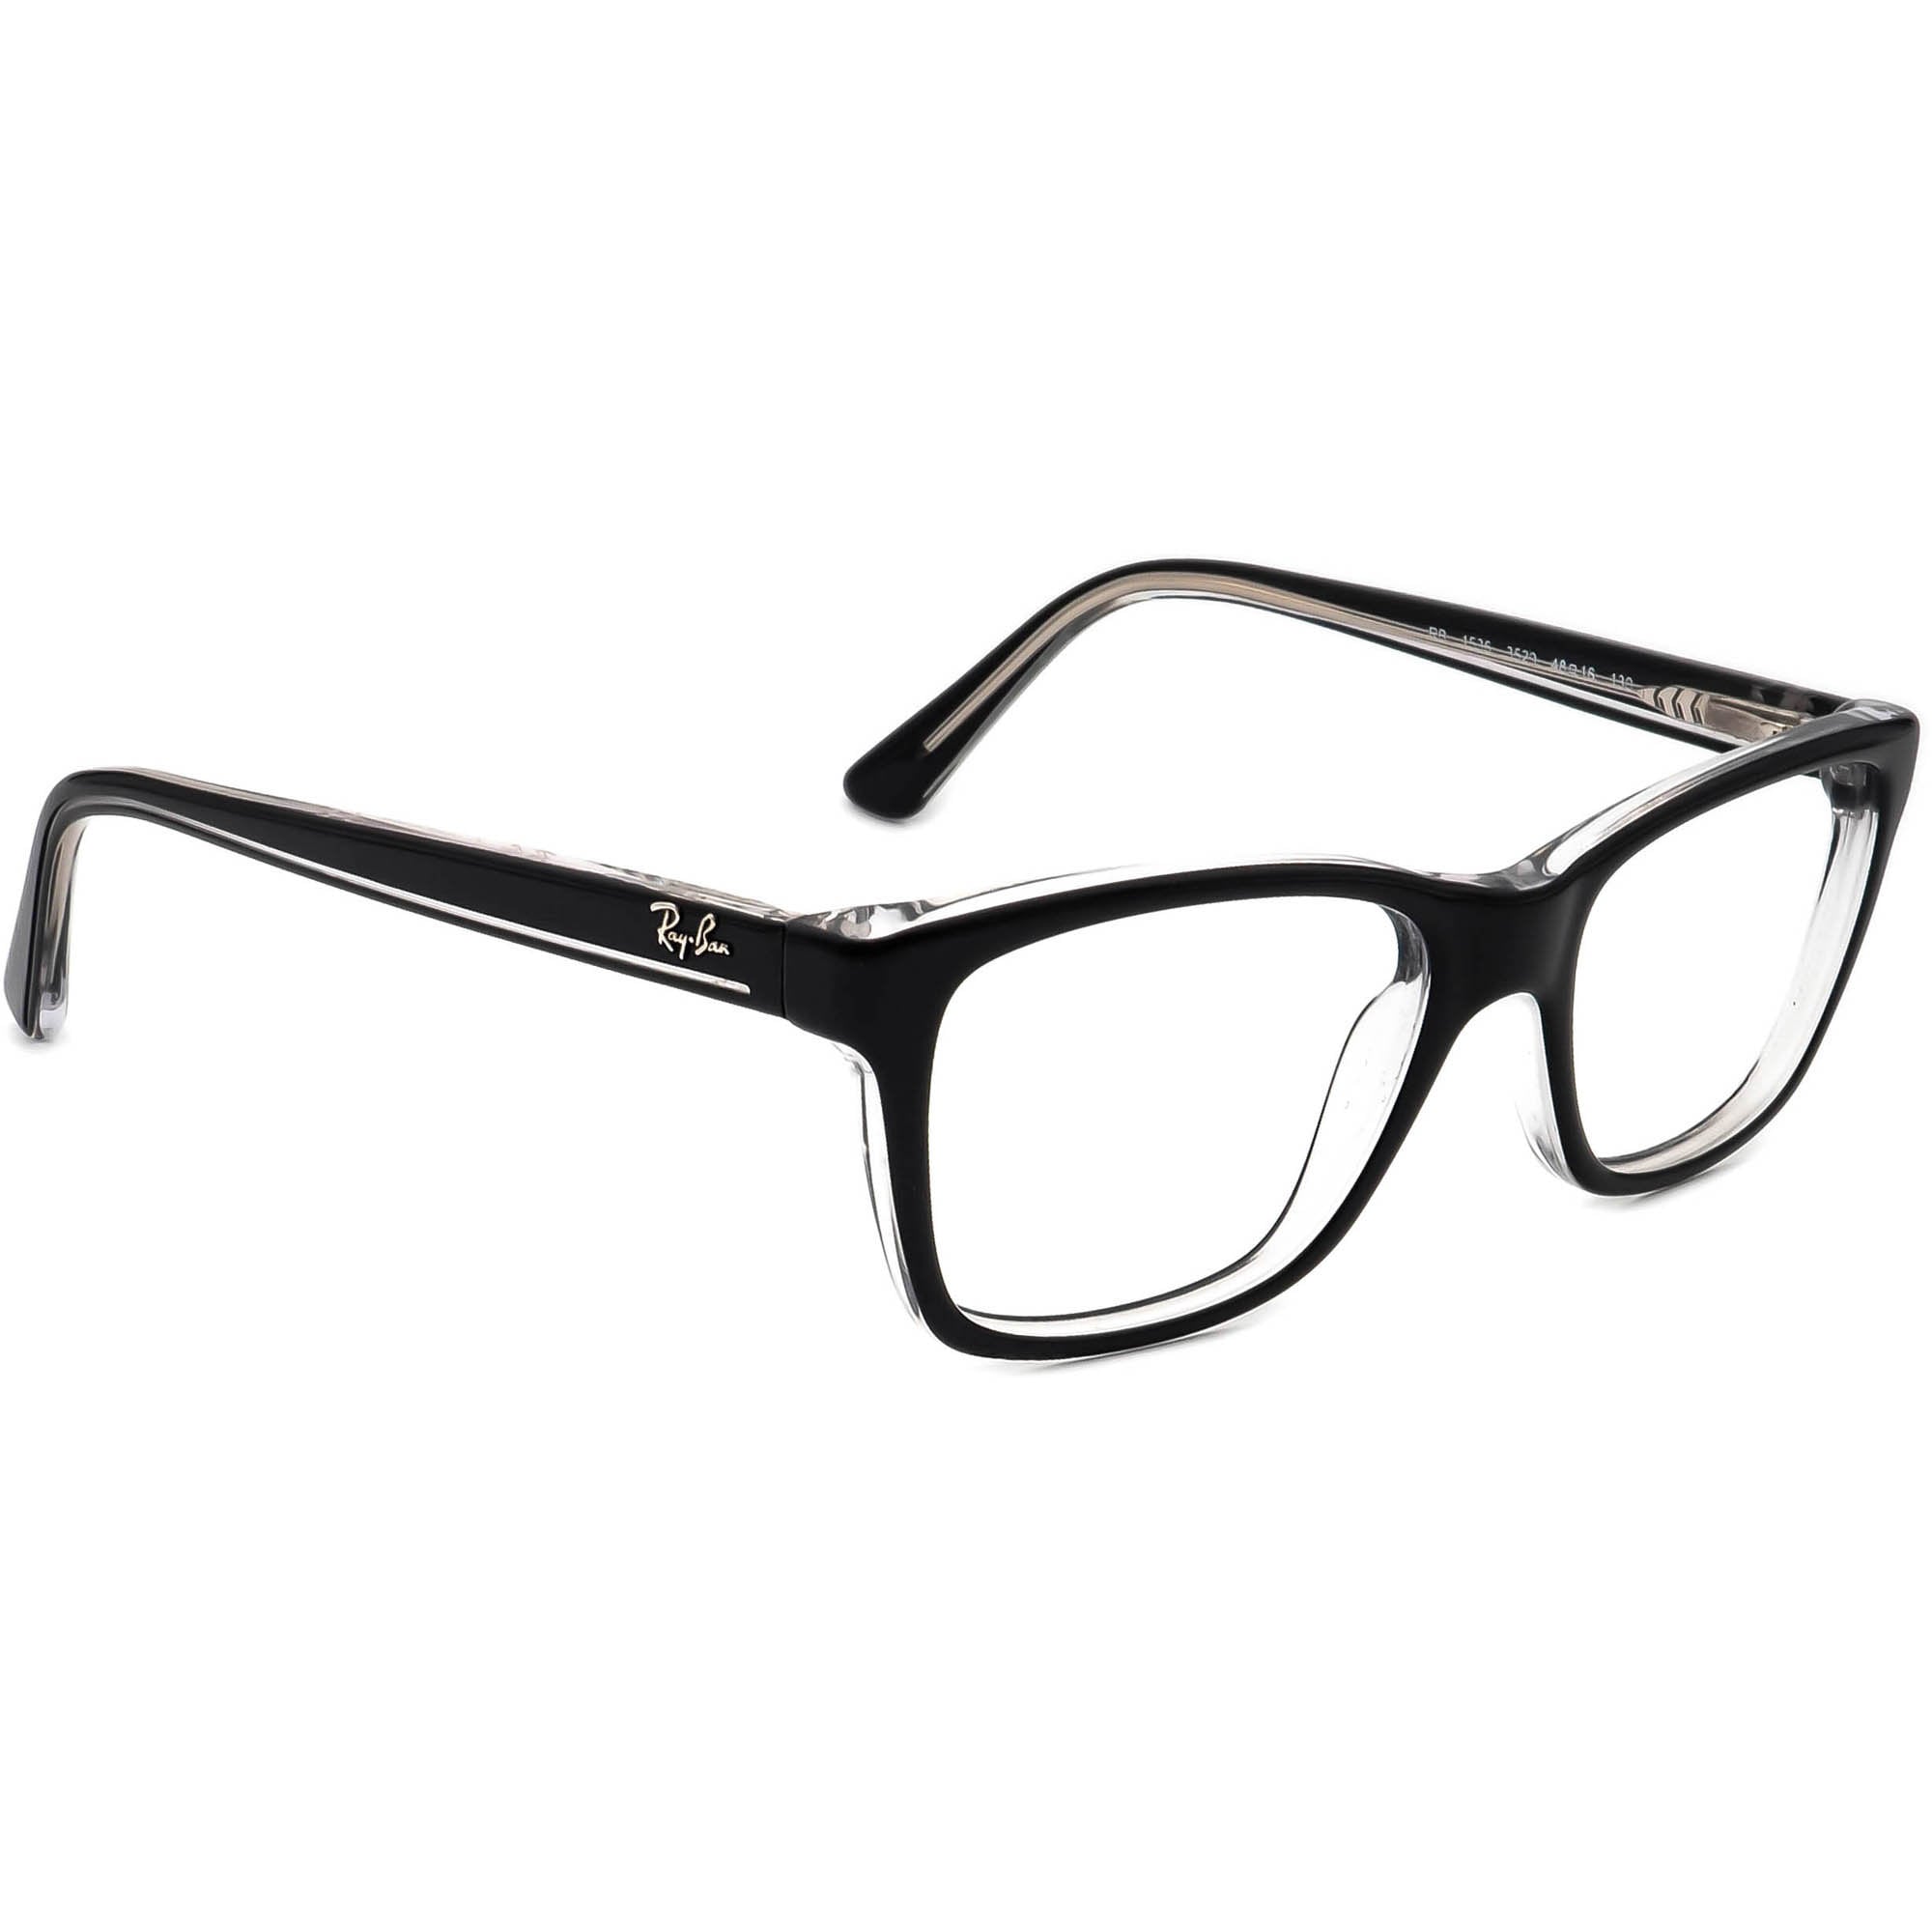 Ray-ban Small Eyeglasses RB 1536 3529 Black/clear B-shape - Etsy